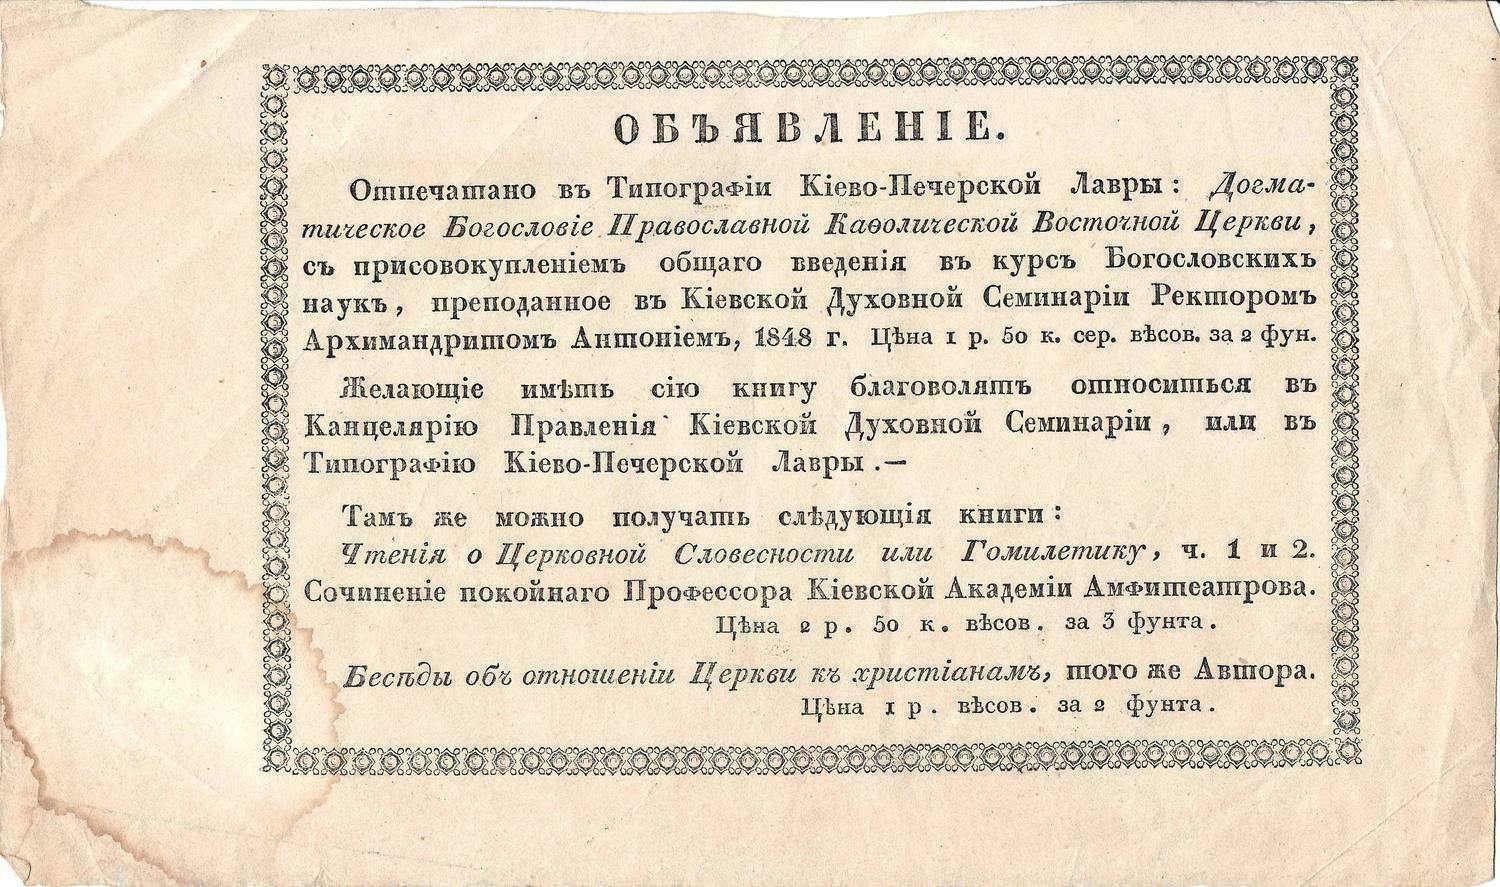 Объявление о продаже книг в типографии Киево-Печерской лавры. 1848.